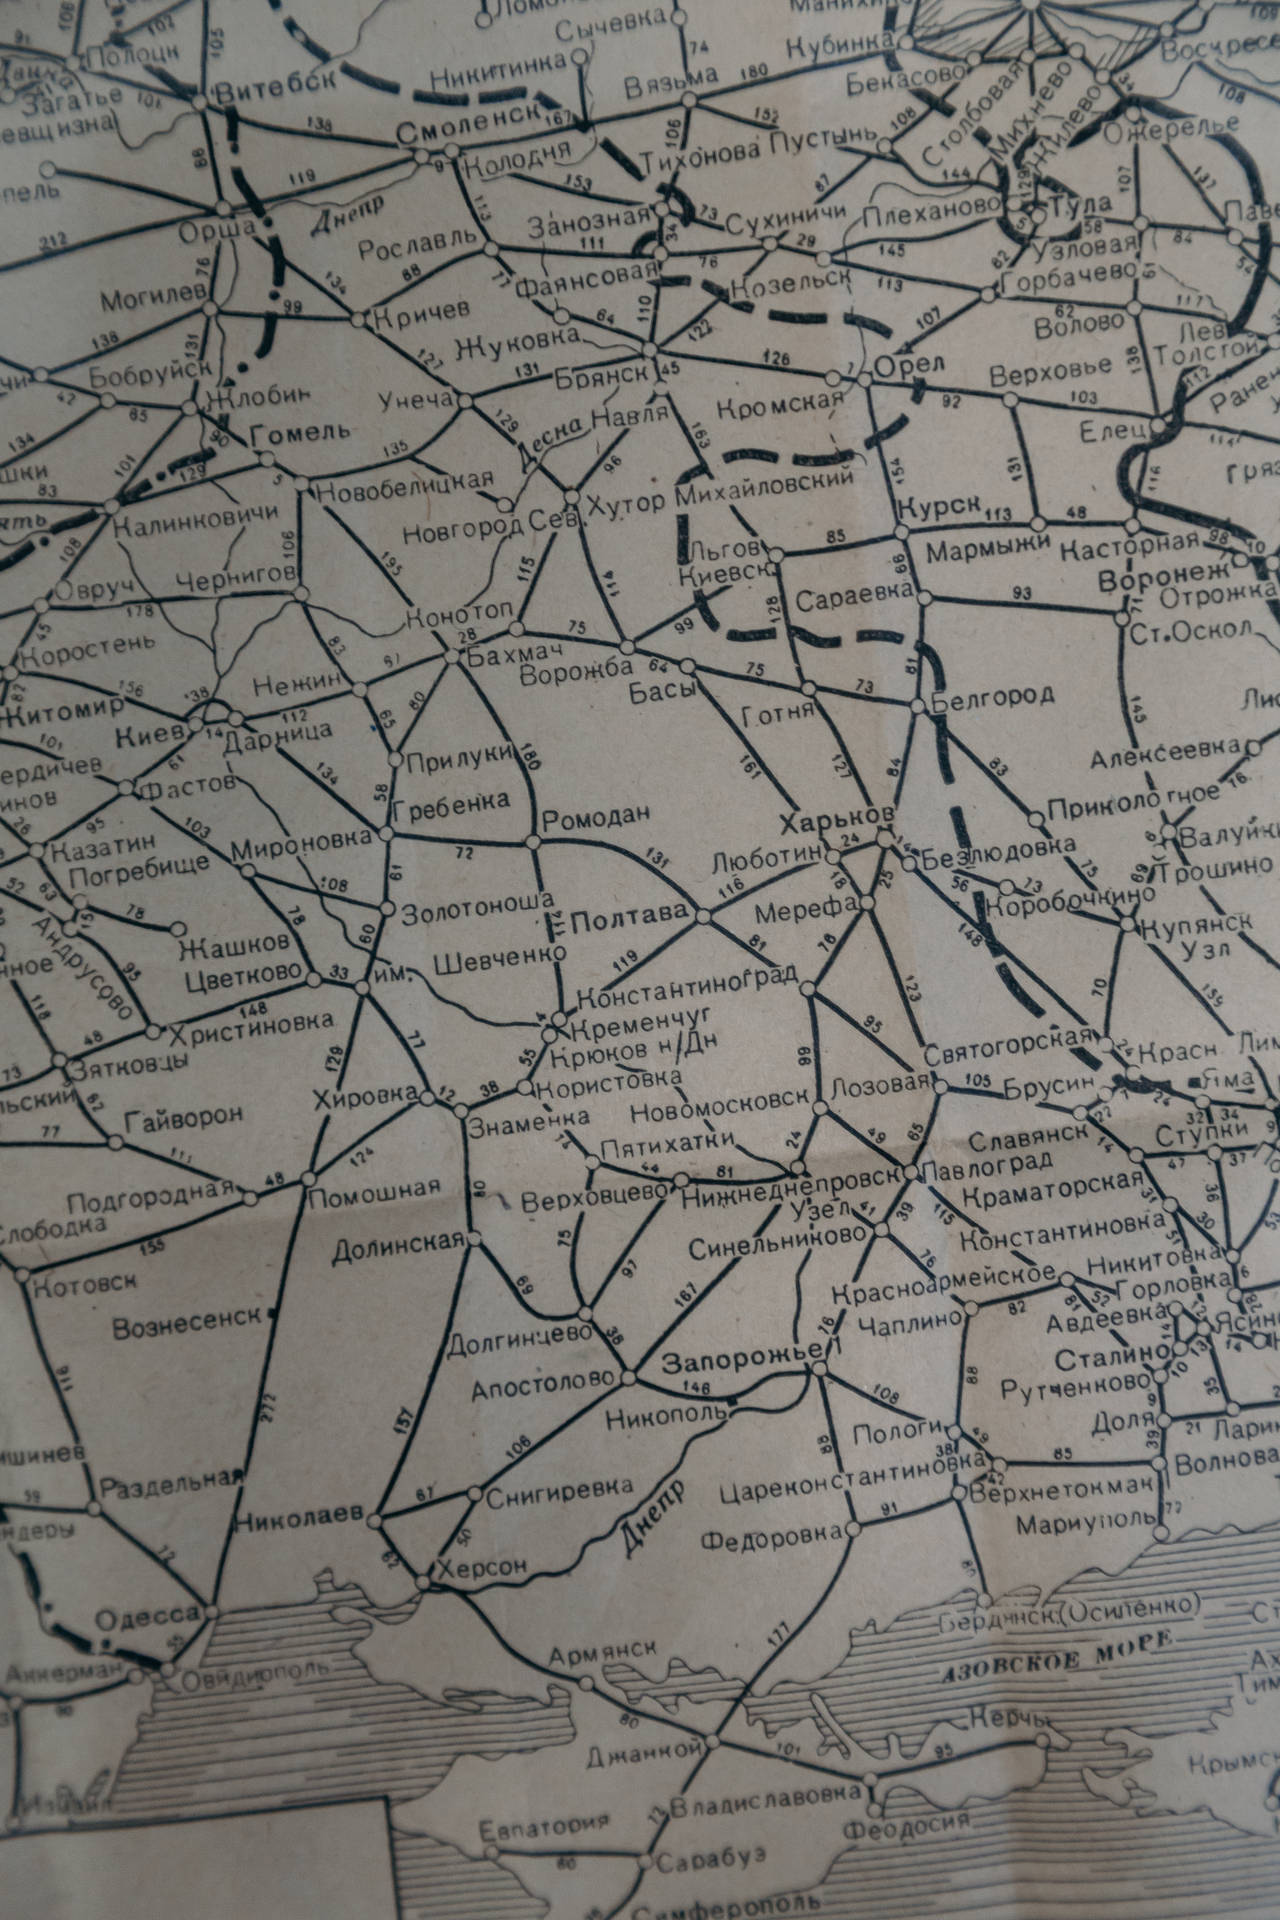 Topografischekarte In Kyrillischer Schrift Wallpaper